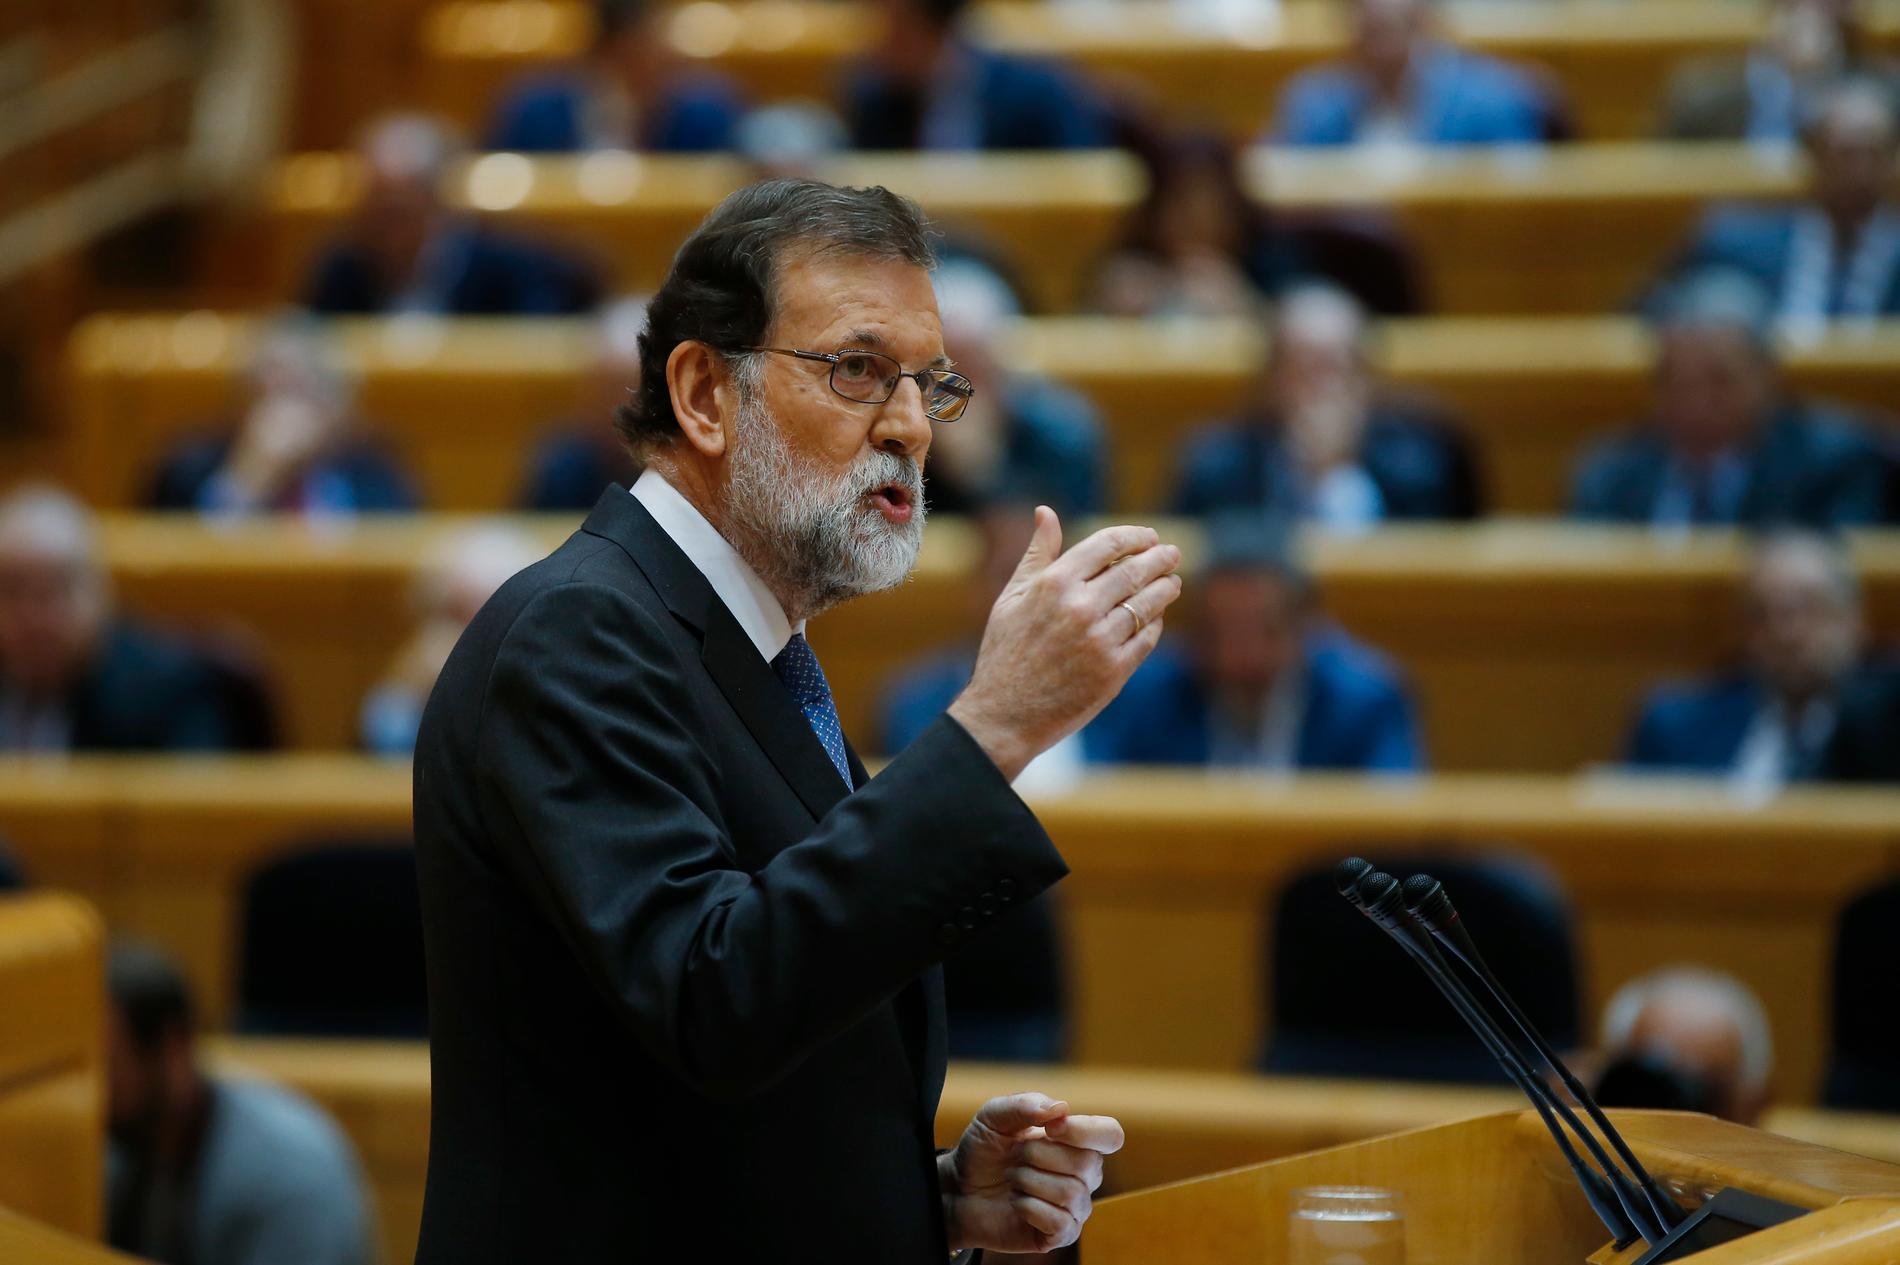 Spaniens premiärminister Mariano Rajoy (PP) talade inför senatens omröstning om att upphäva Kataloniens självstyre.